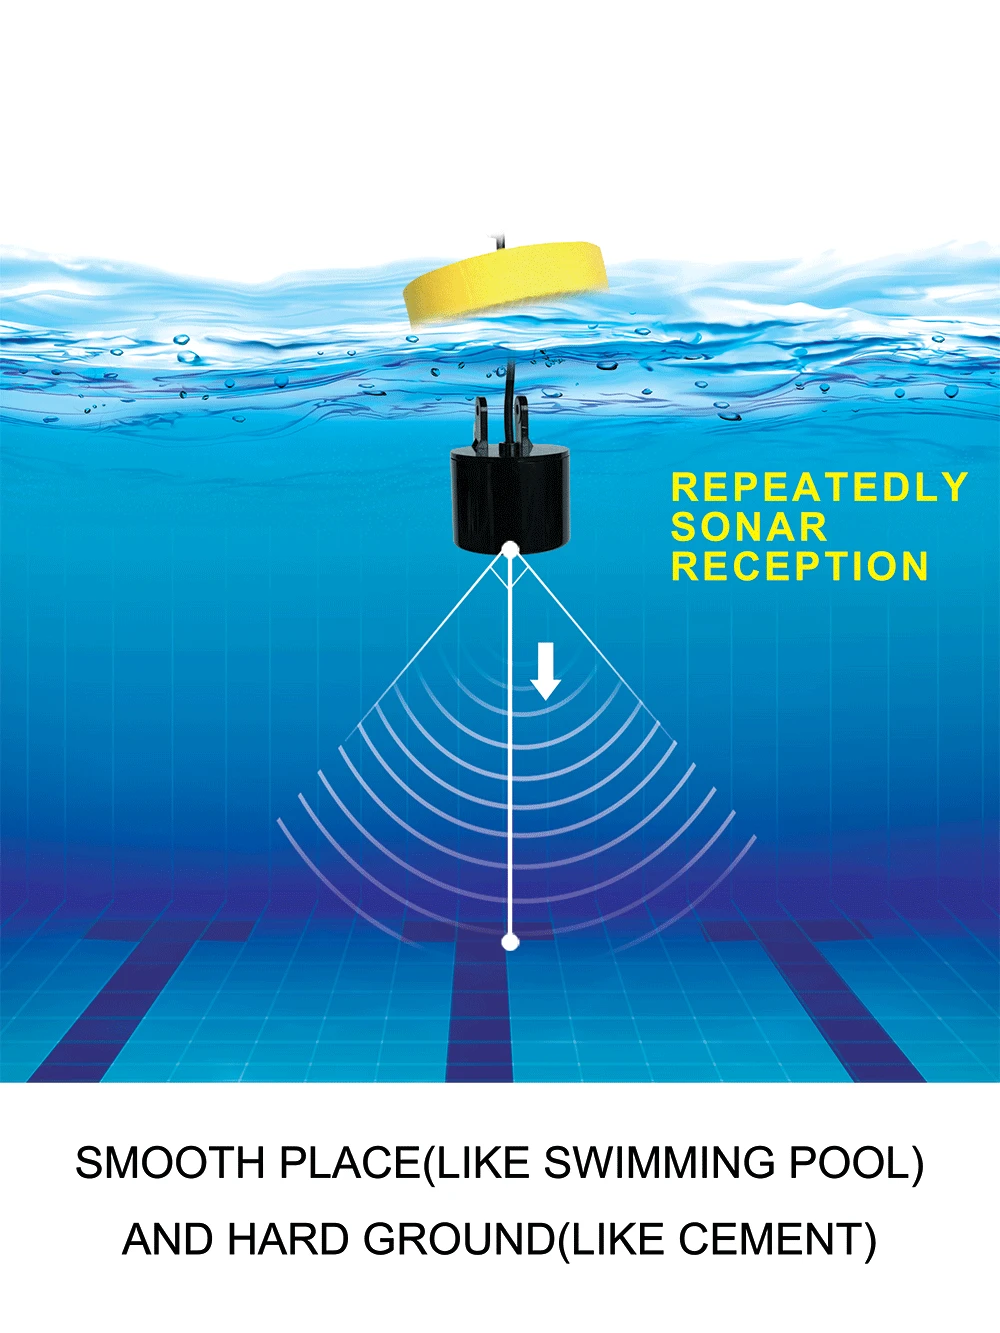 LUCKY водостойкий Портативный 100 м/300FT глубина рыбы Проводная сигнализация детектор рыбы эхолот 2,4 'ЖК дисплей искатель рыбы